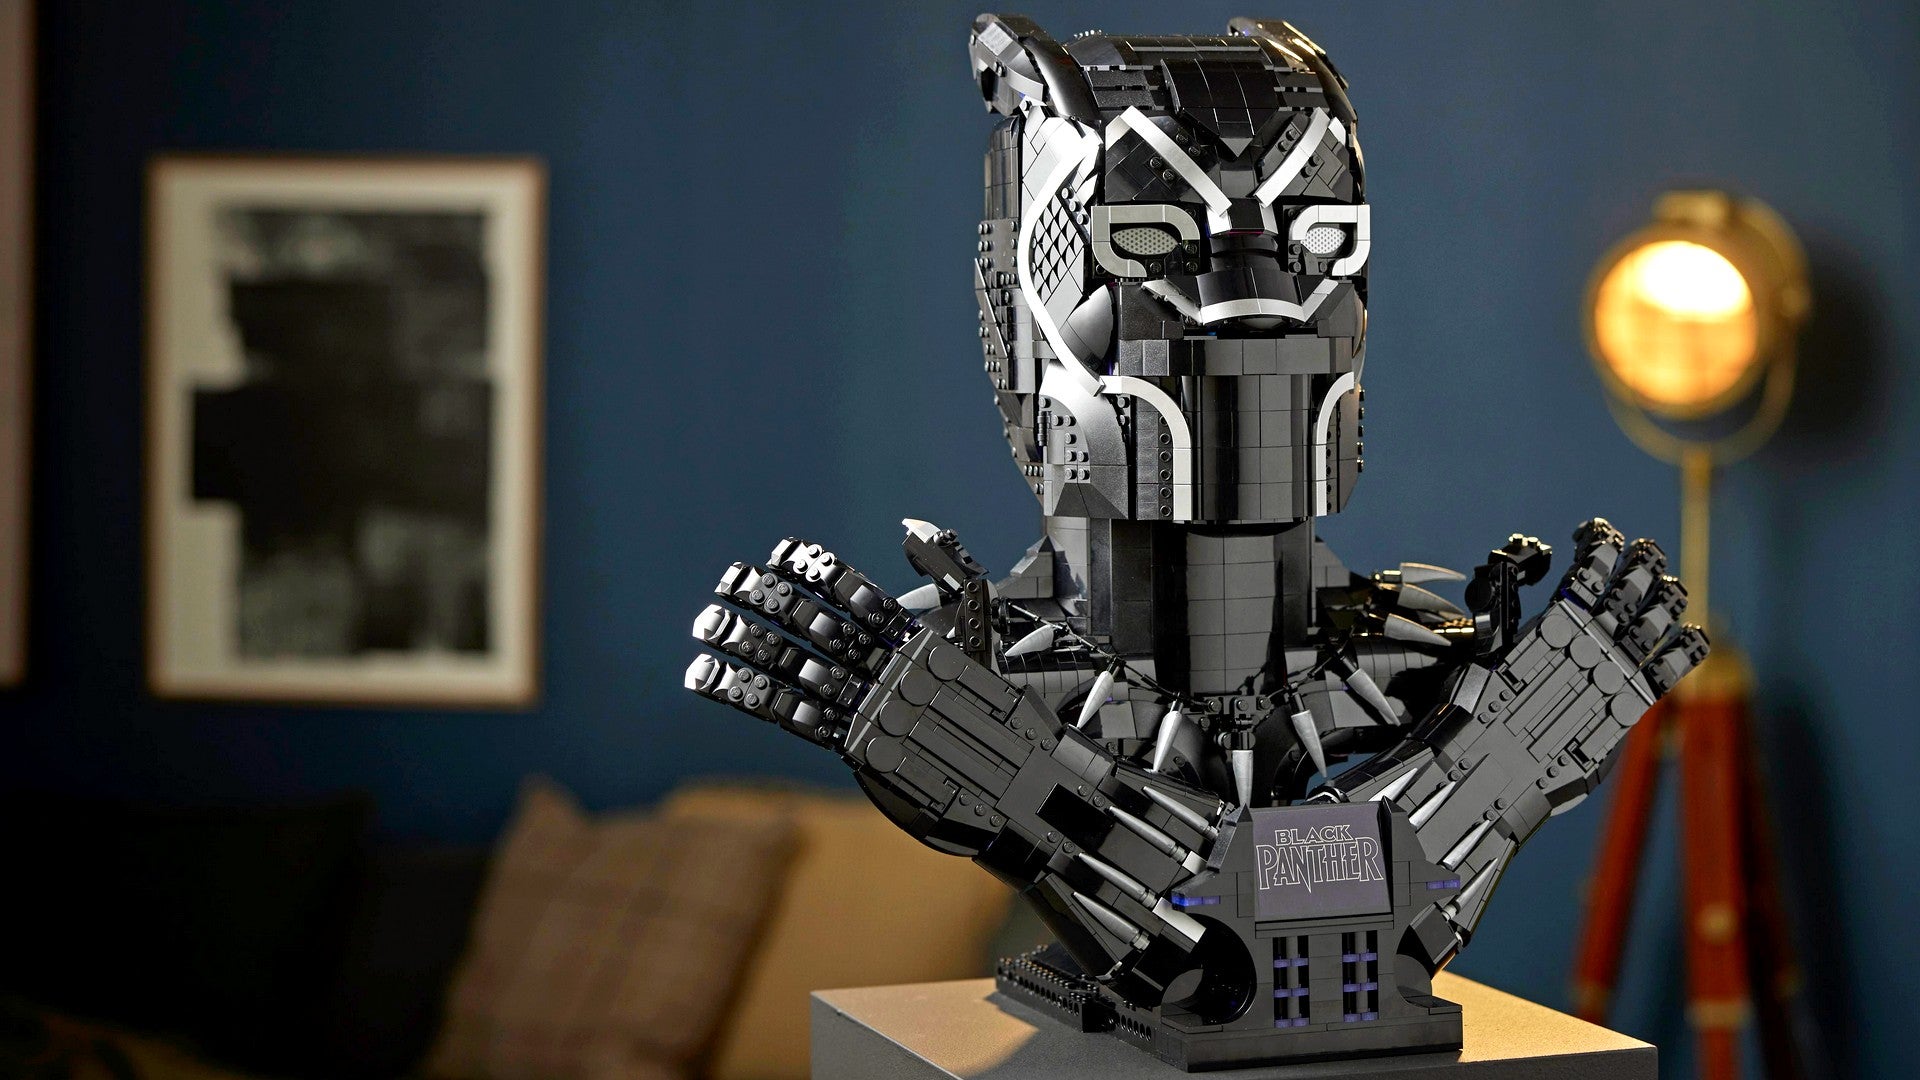 Bilder zu Black Panther: Neues Lego Set für 350 Euro jetzt erhältlich